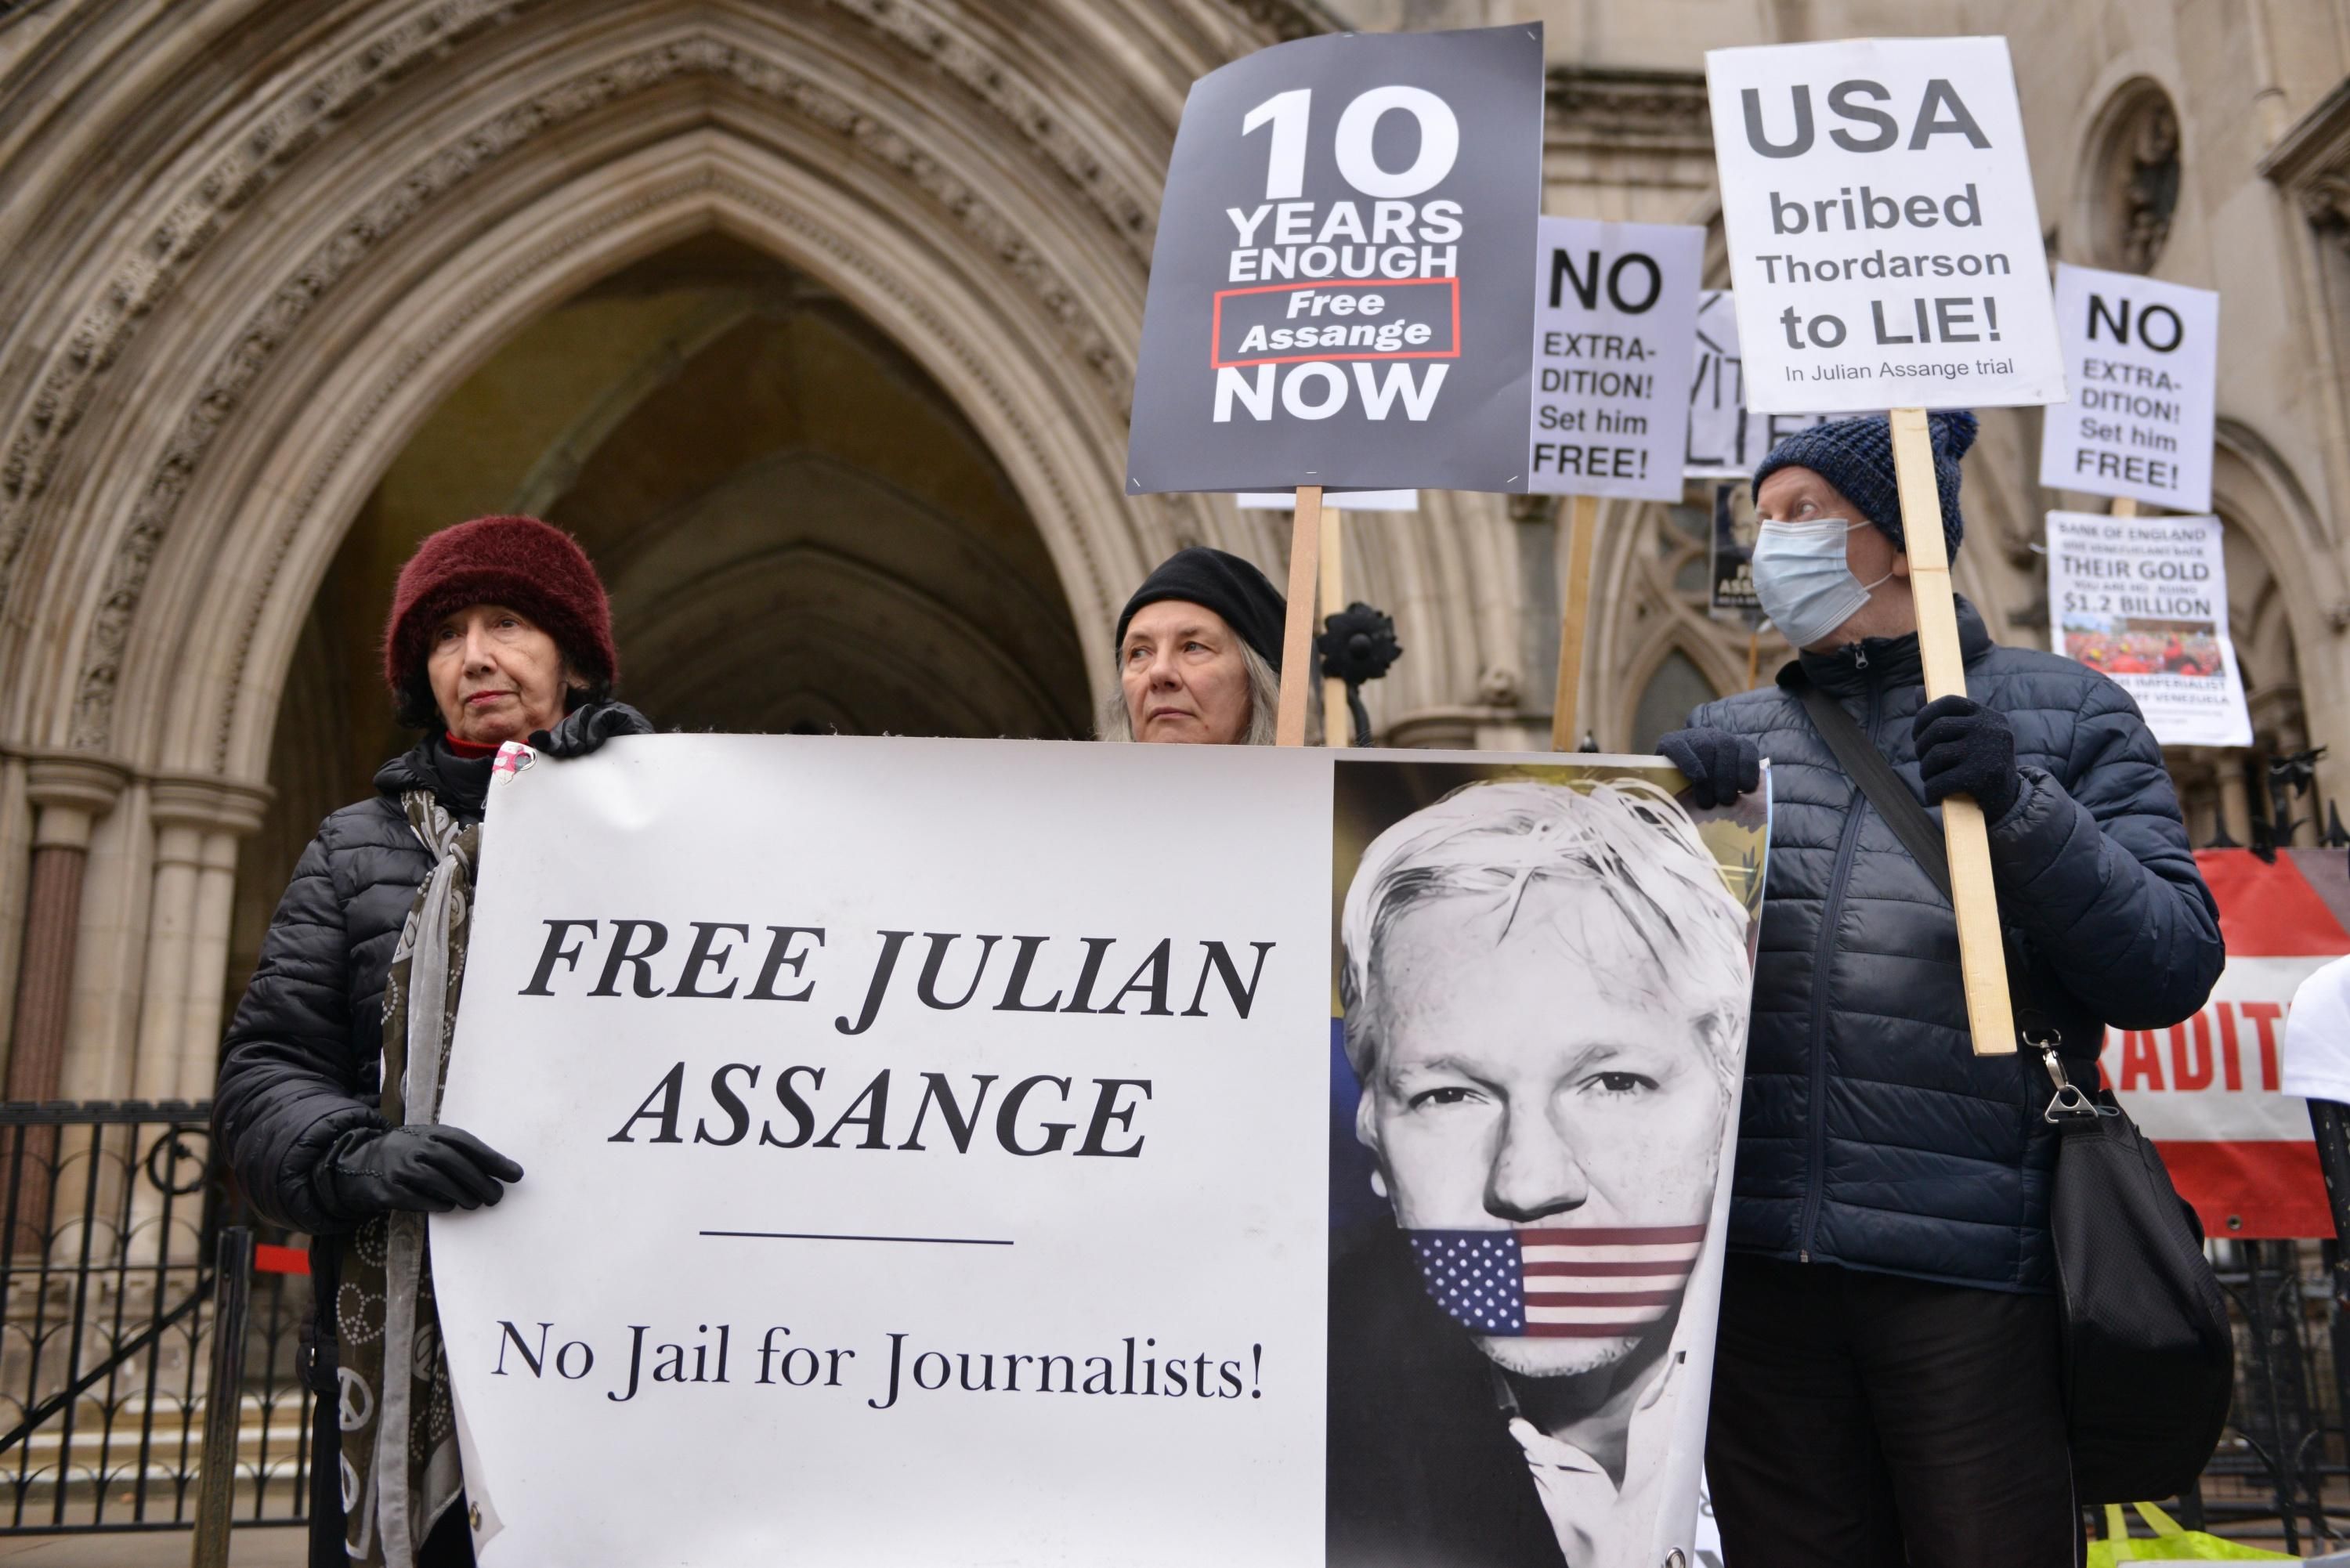 Demonstrators rally in support of WikiLeaks founder Julian Assange